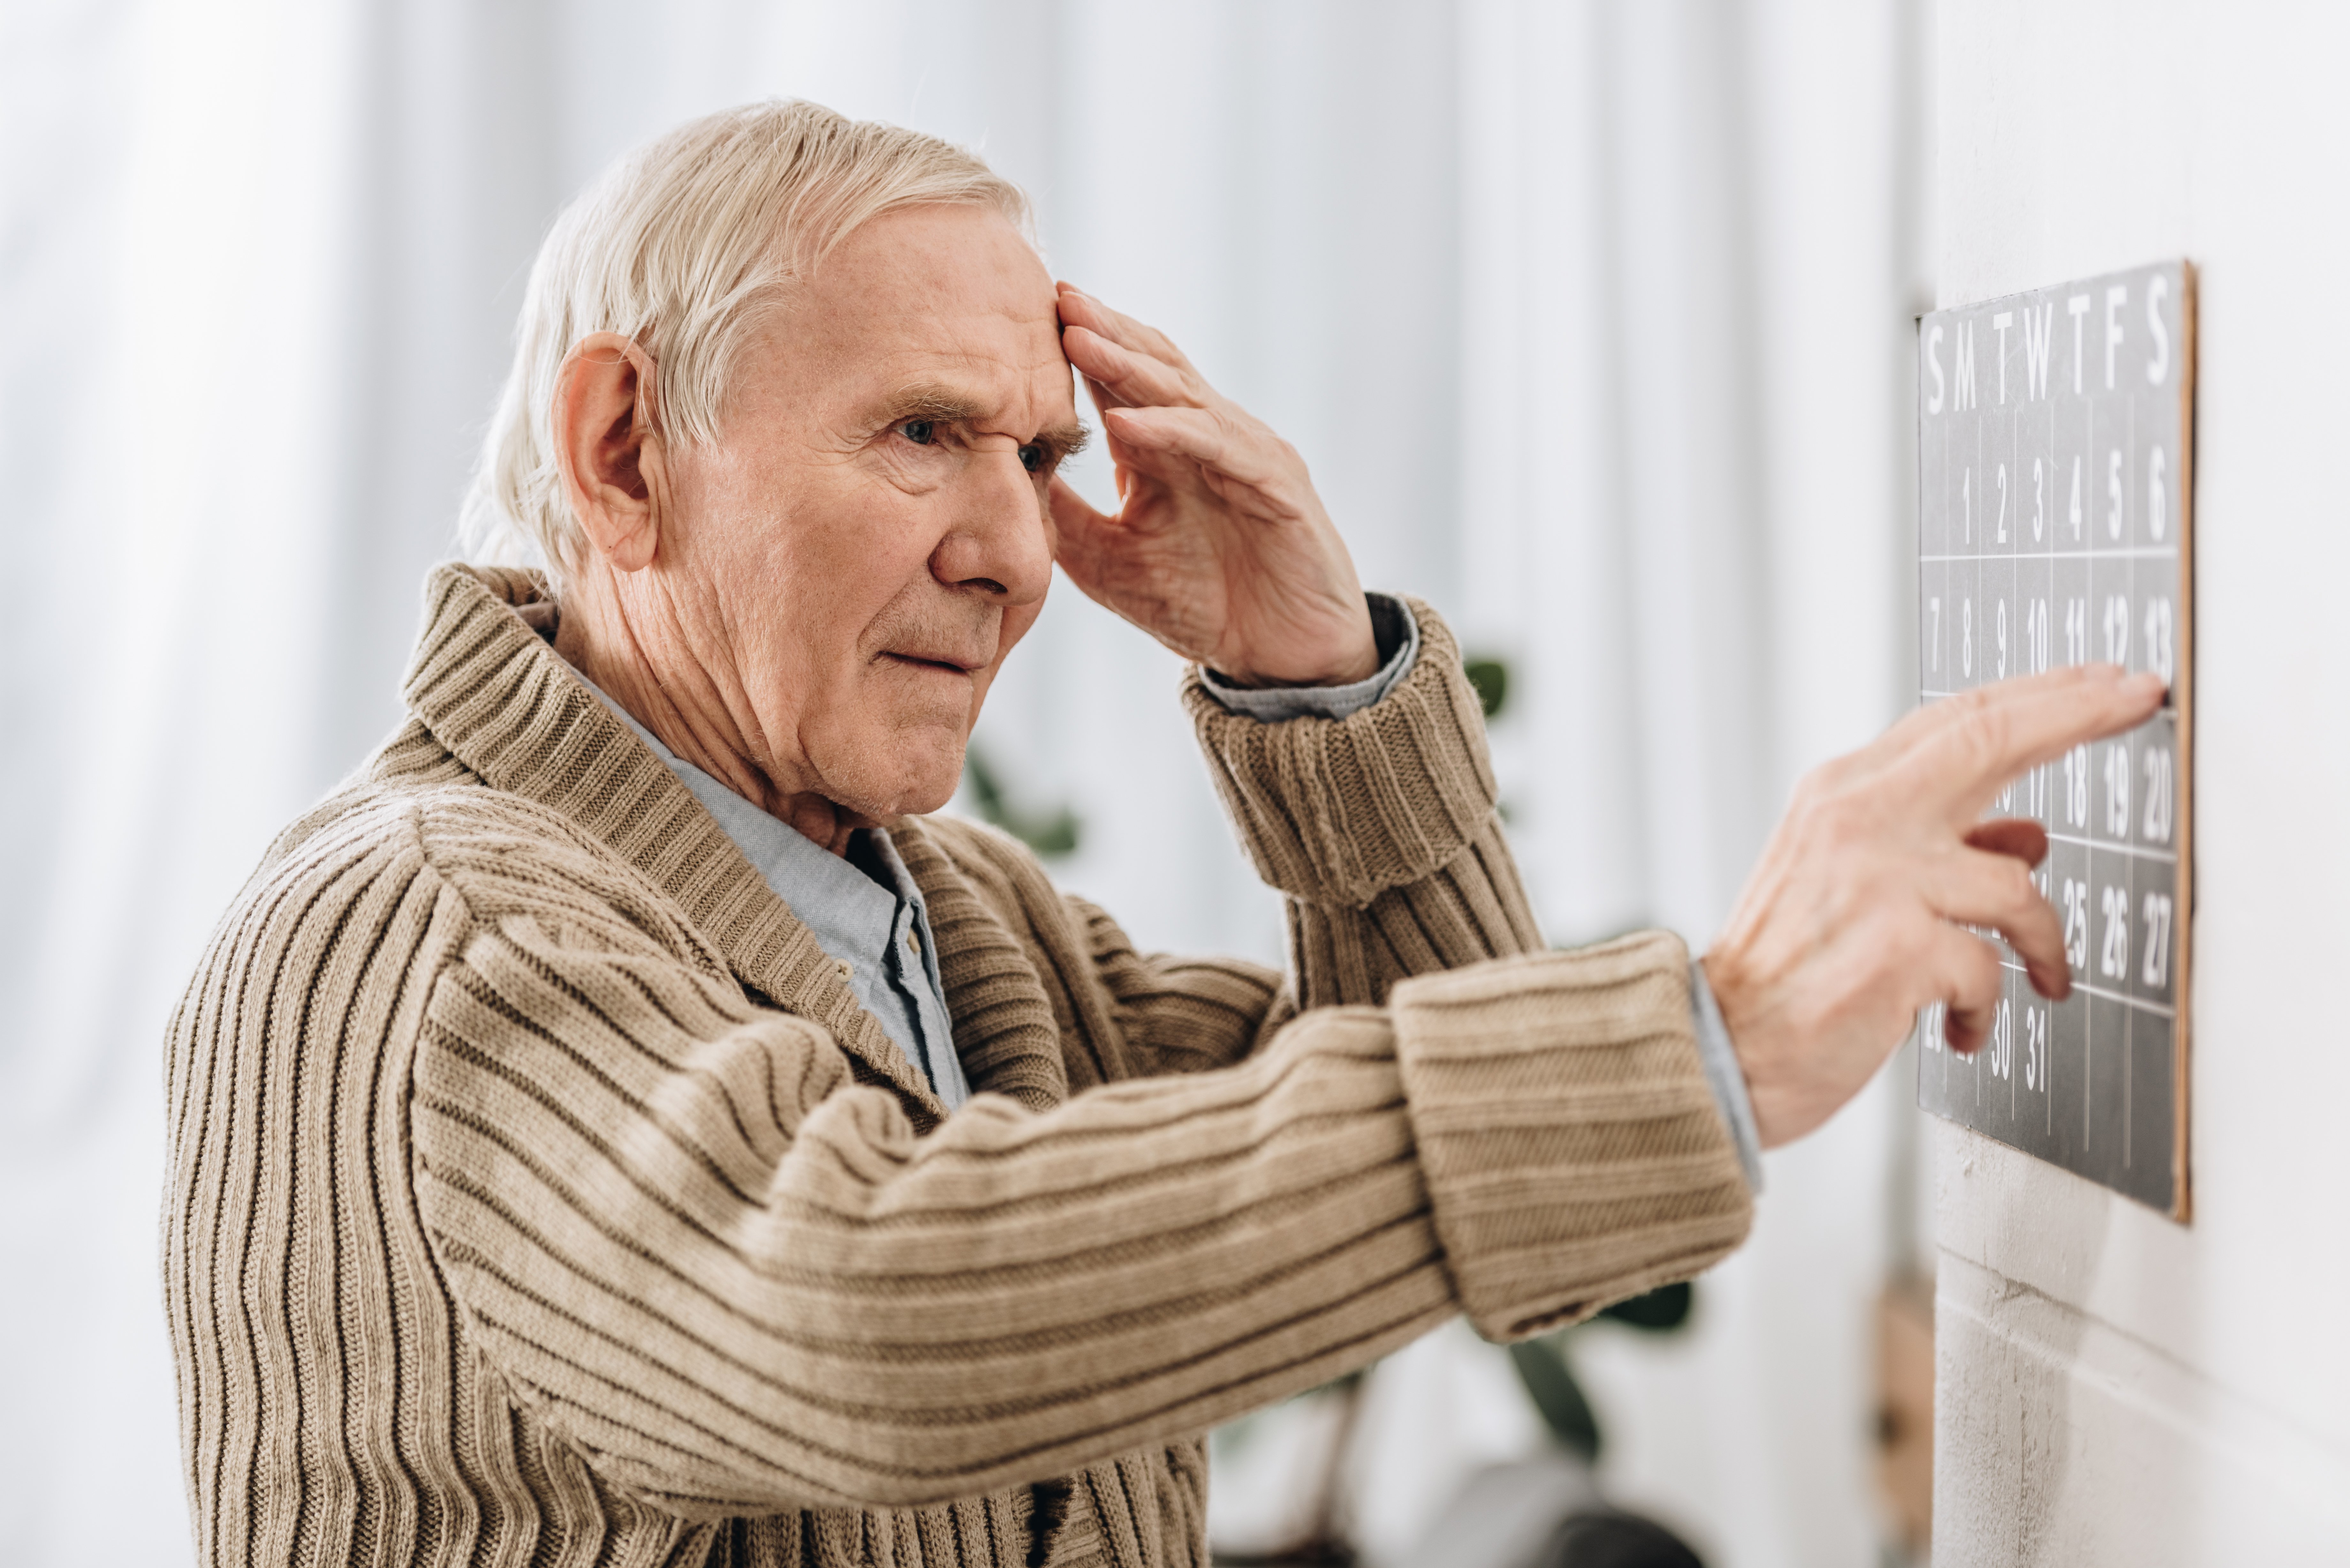 O estudo considerou 11 fatores associados ao risco para incidência de demência em idosos, entre eles, idade avançada, sexo masculino, diagnóstico de demência na família, histórico de diabetes, entre outros